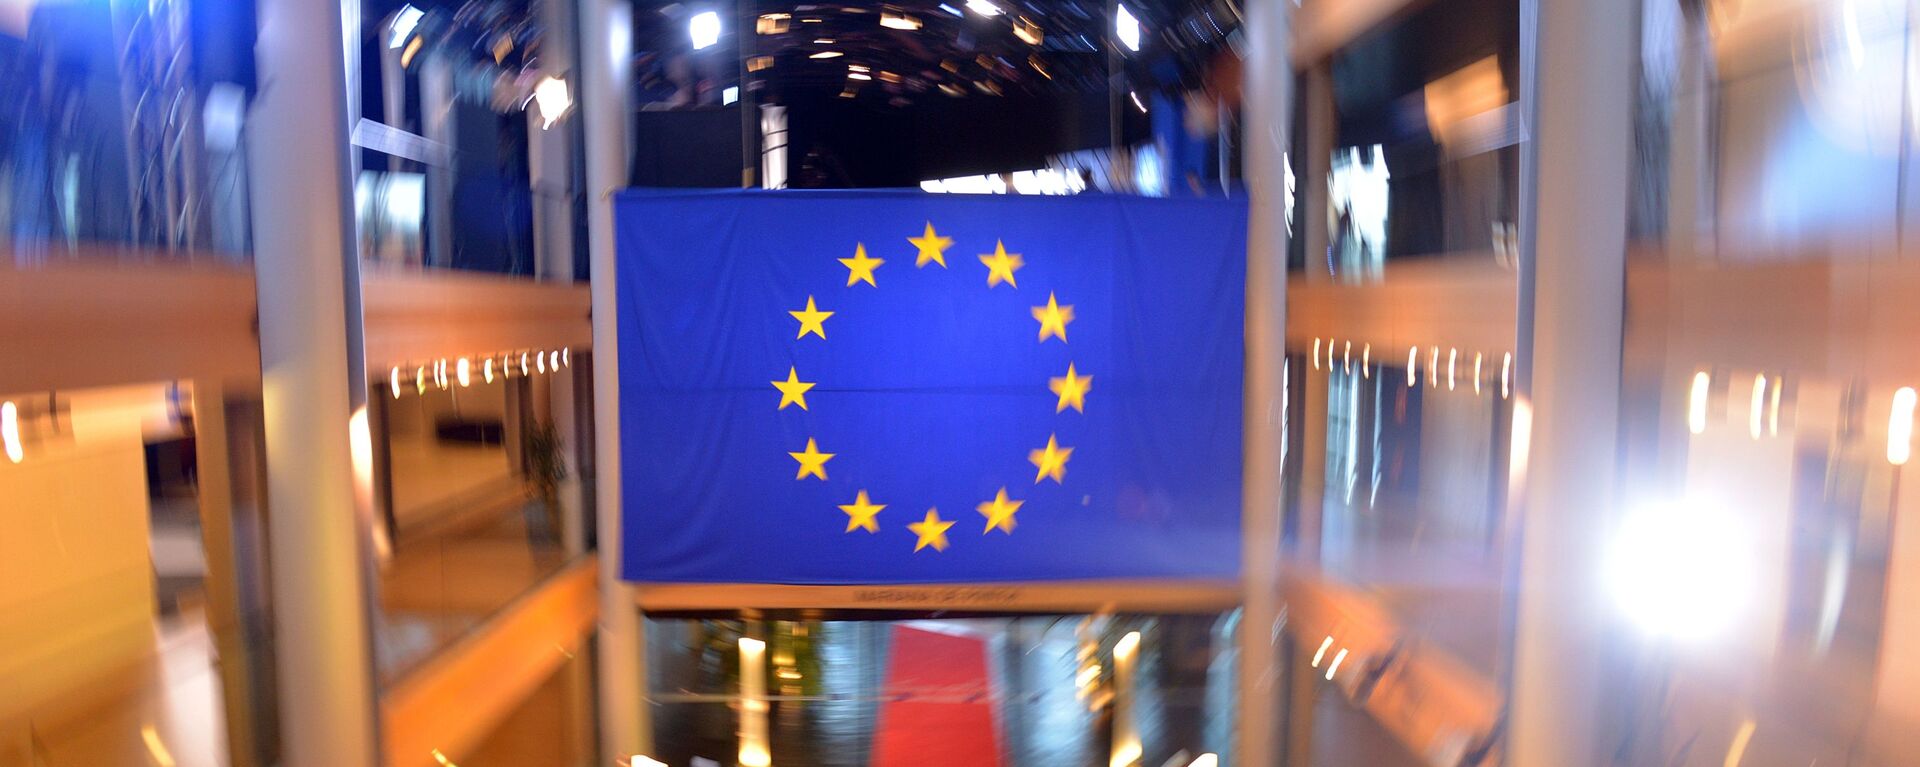 Флаг Евросоюза в главном здании Совета Европы в Страсбурге - Sputnik Узбекистан, 1920, 01.03.2021